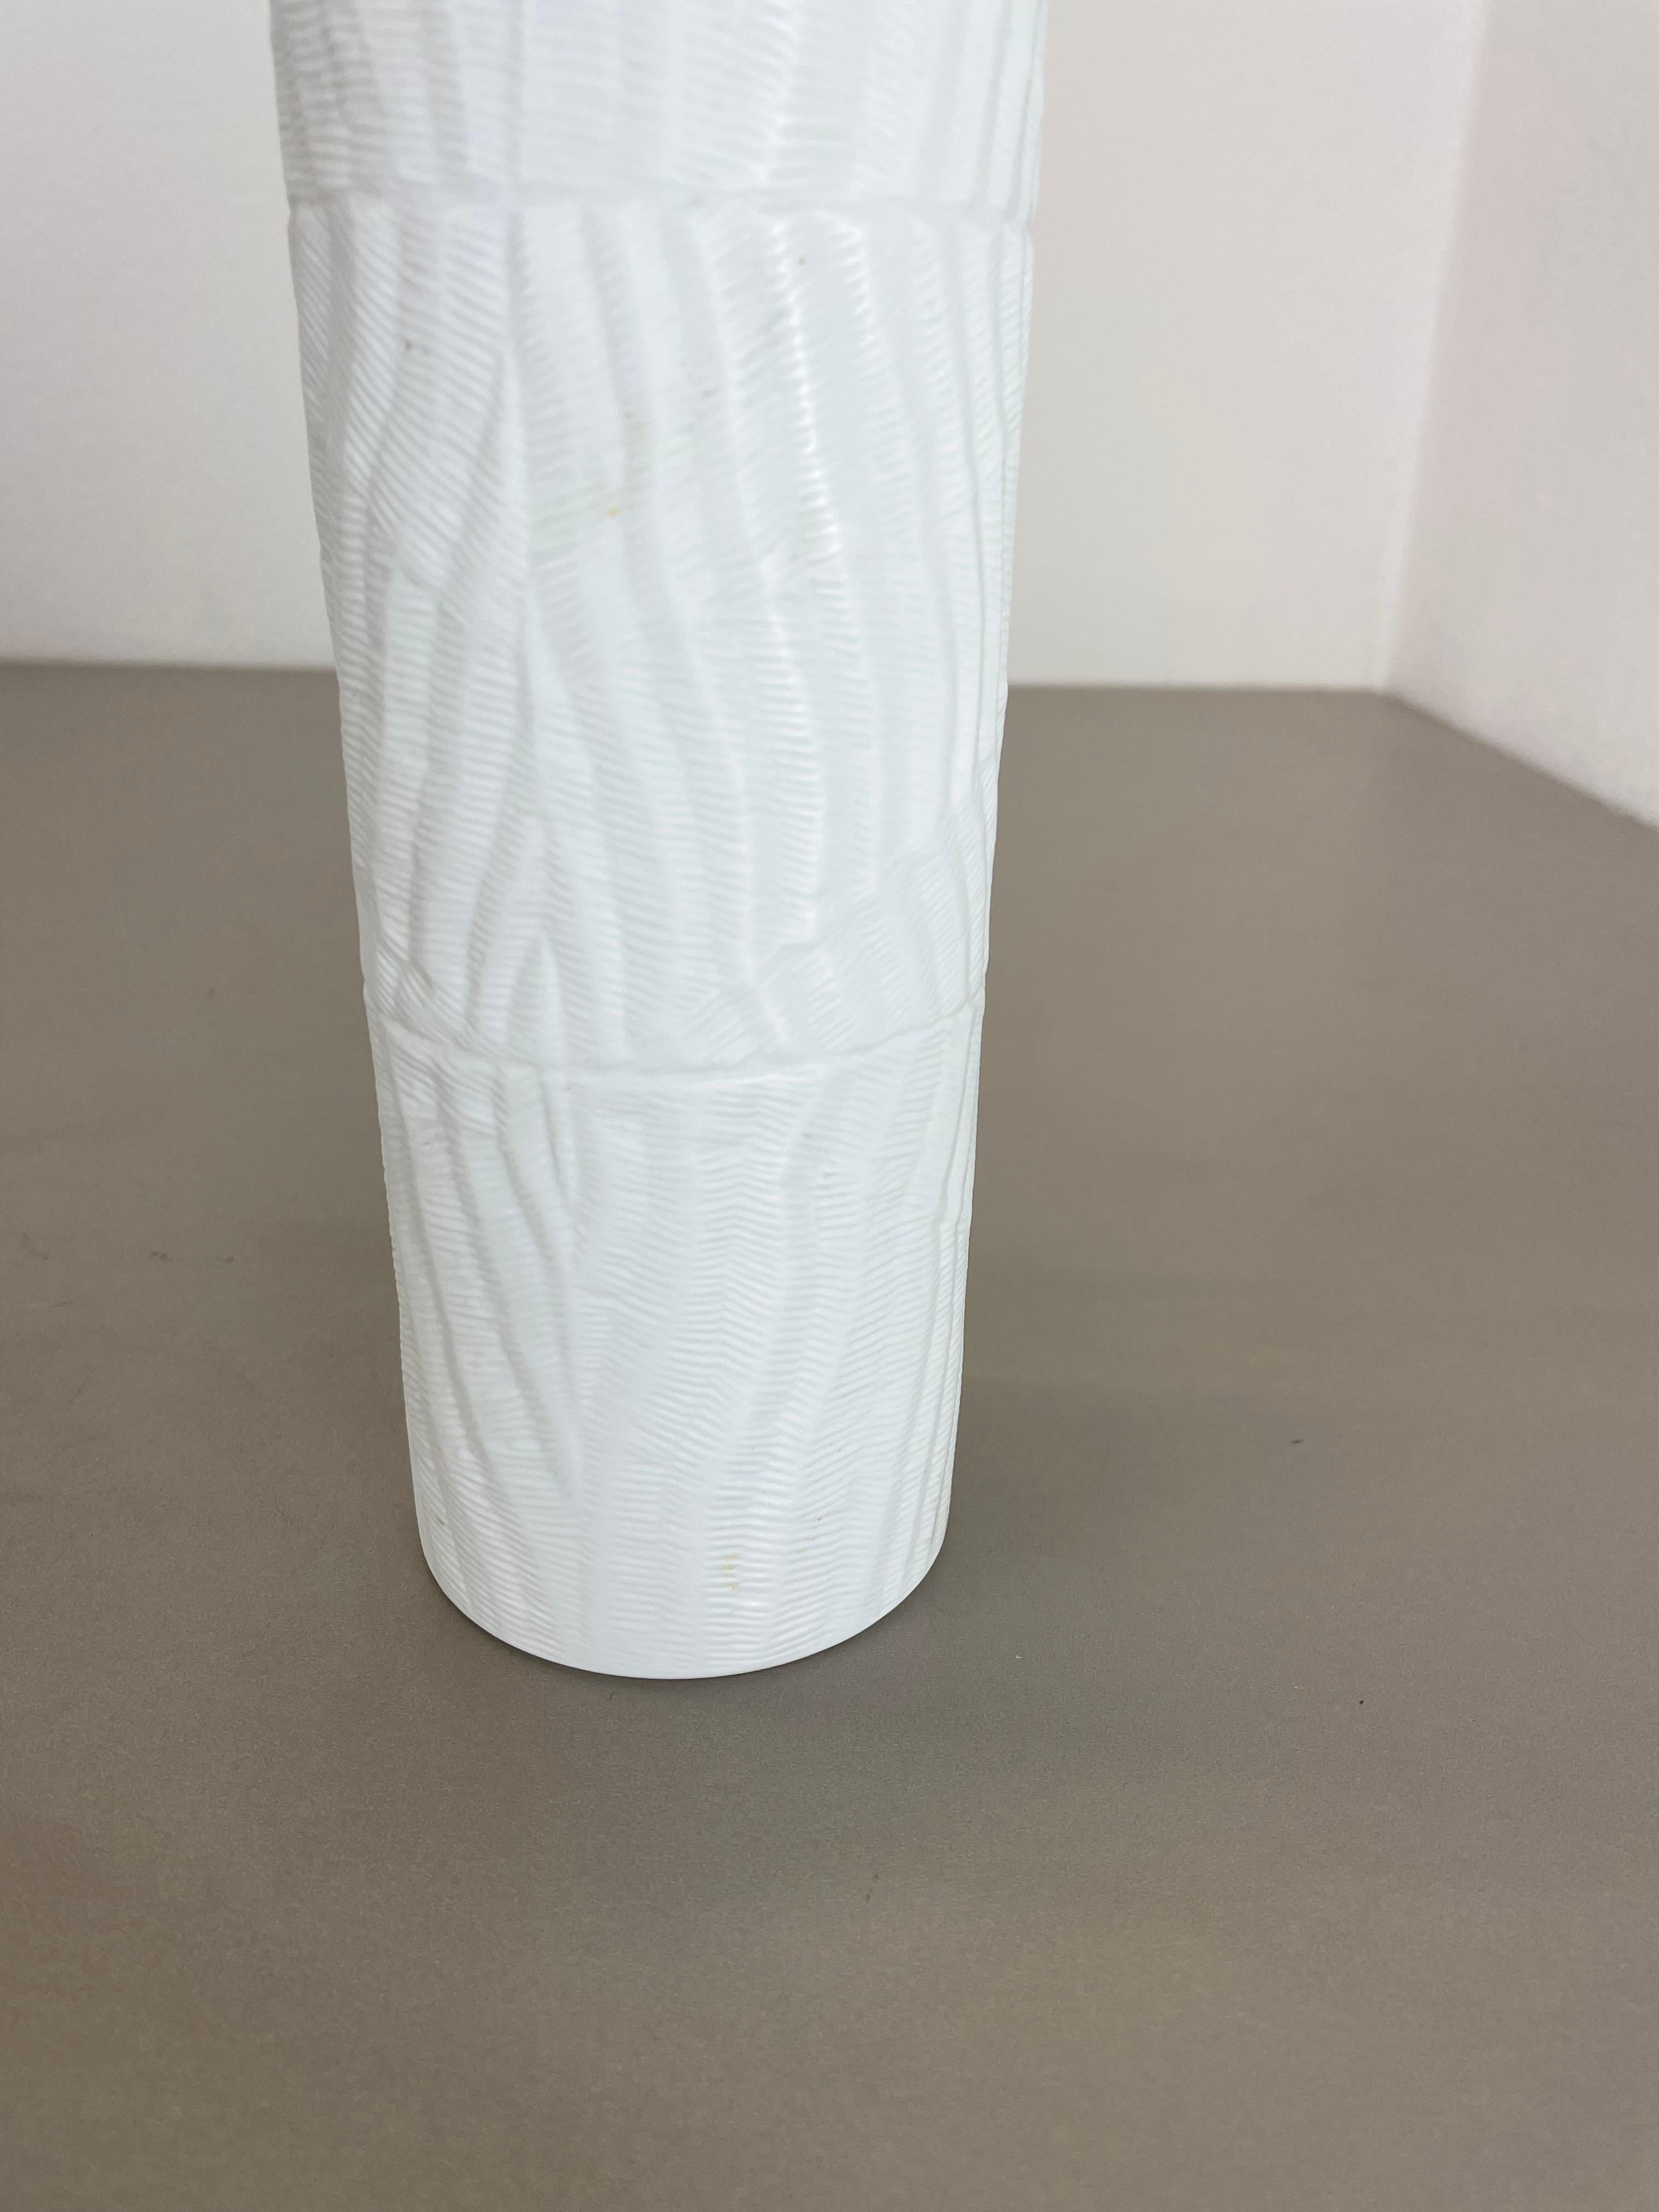 Large 23cm OP Art Vase Porcelain Vase by Martin Freyer for Rosenthal, Germany For Sale 3